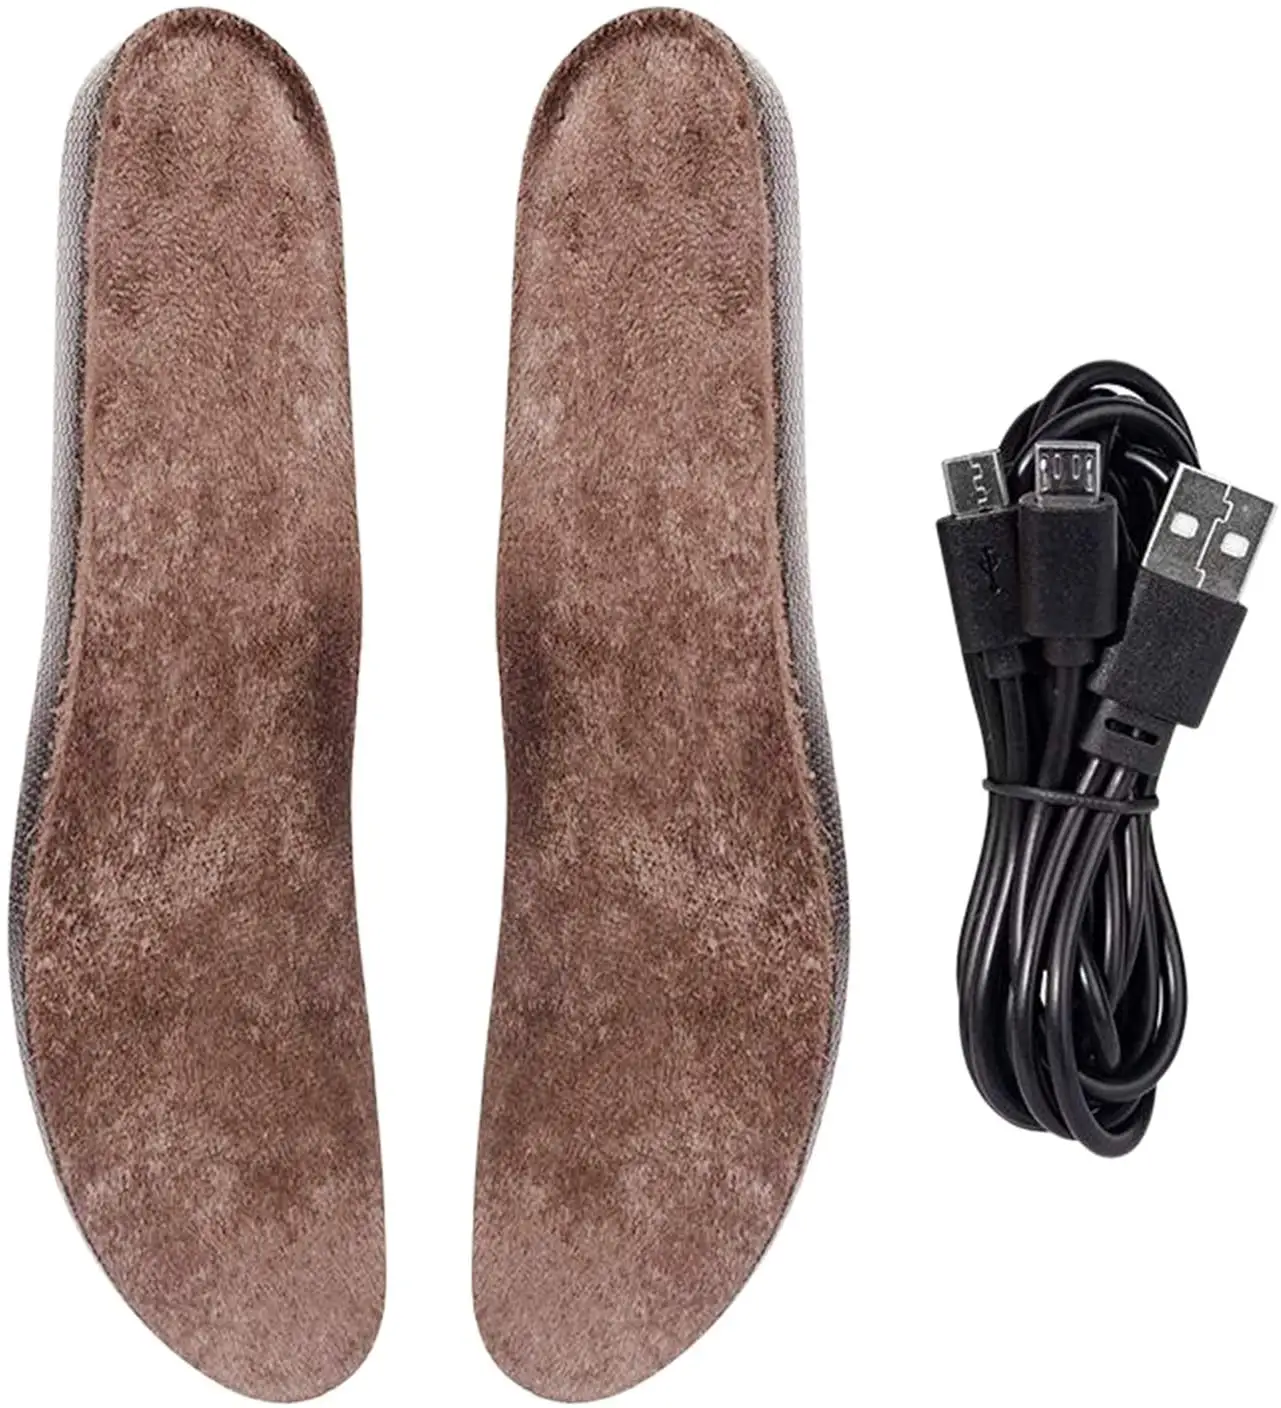 USB şarj edilebilir ayak isıtıcıları kış kendinden termik ayakkabı tabanlık ısıtma kesilebilir tabanlık avcılık yürüyüş ısıtmalı tabanlık adam için